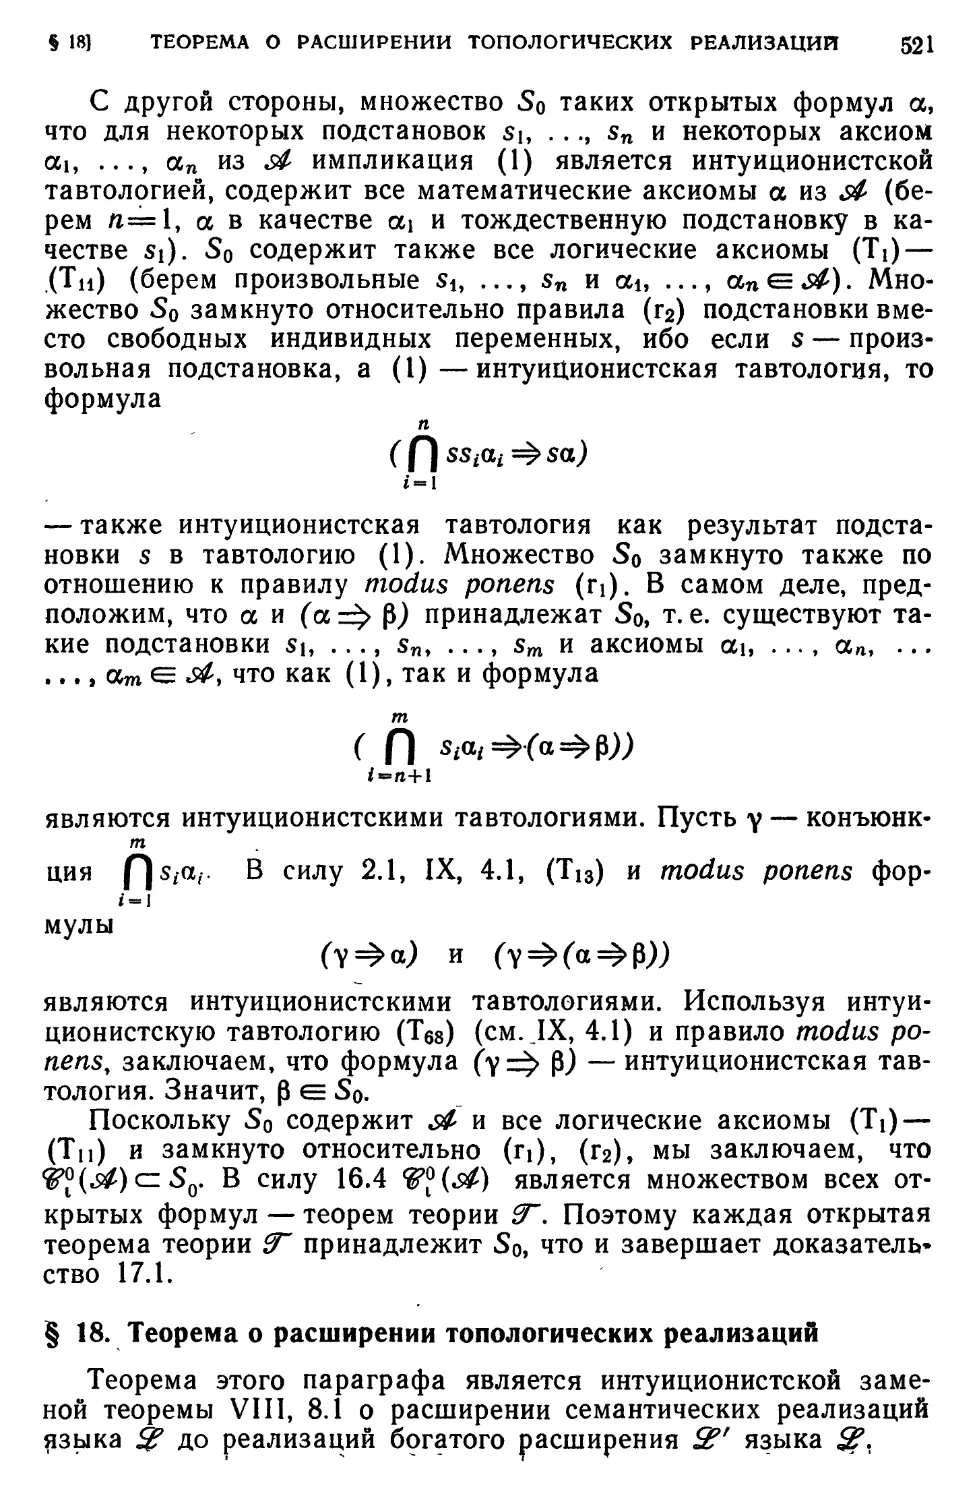 § 18. Теорема о расширении топологических реализаций